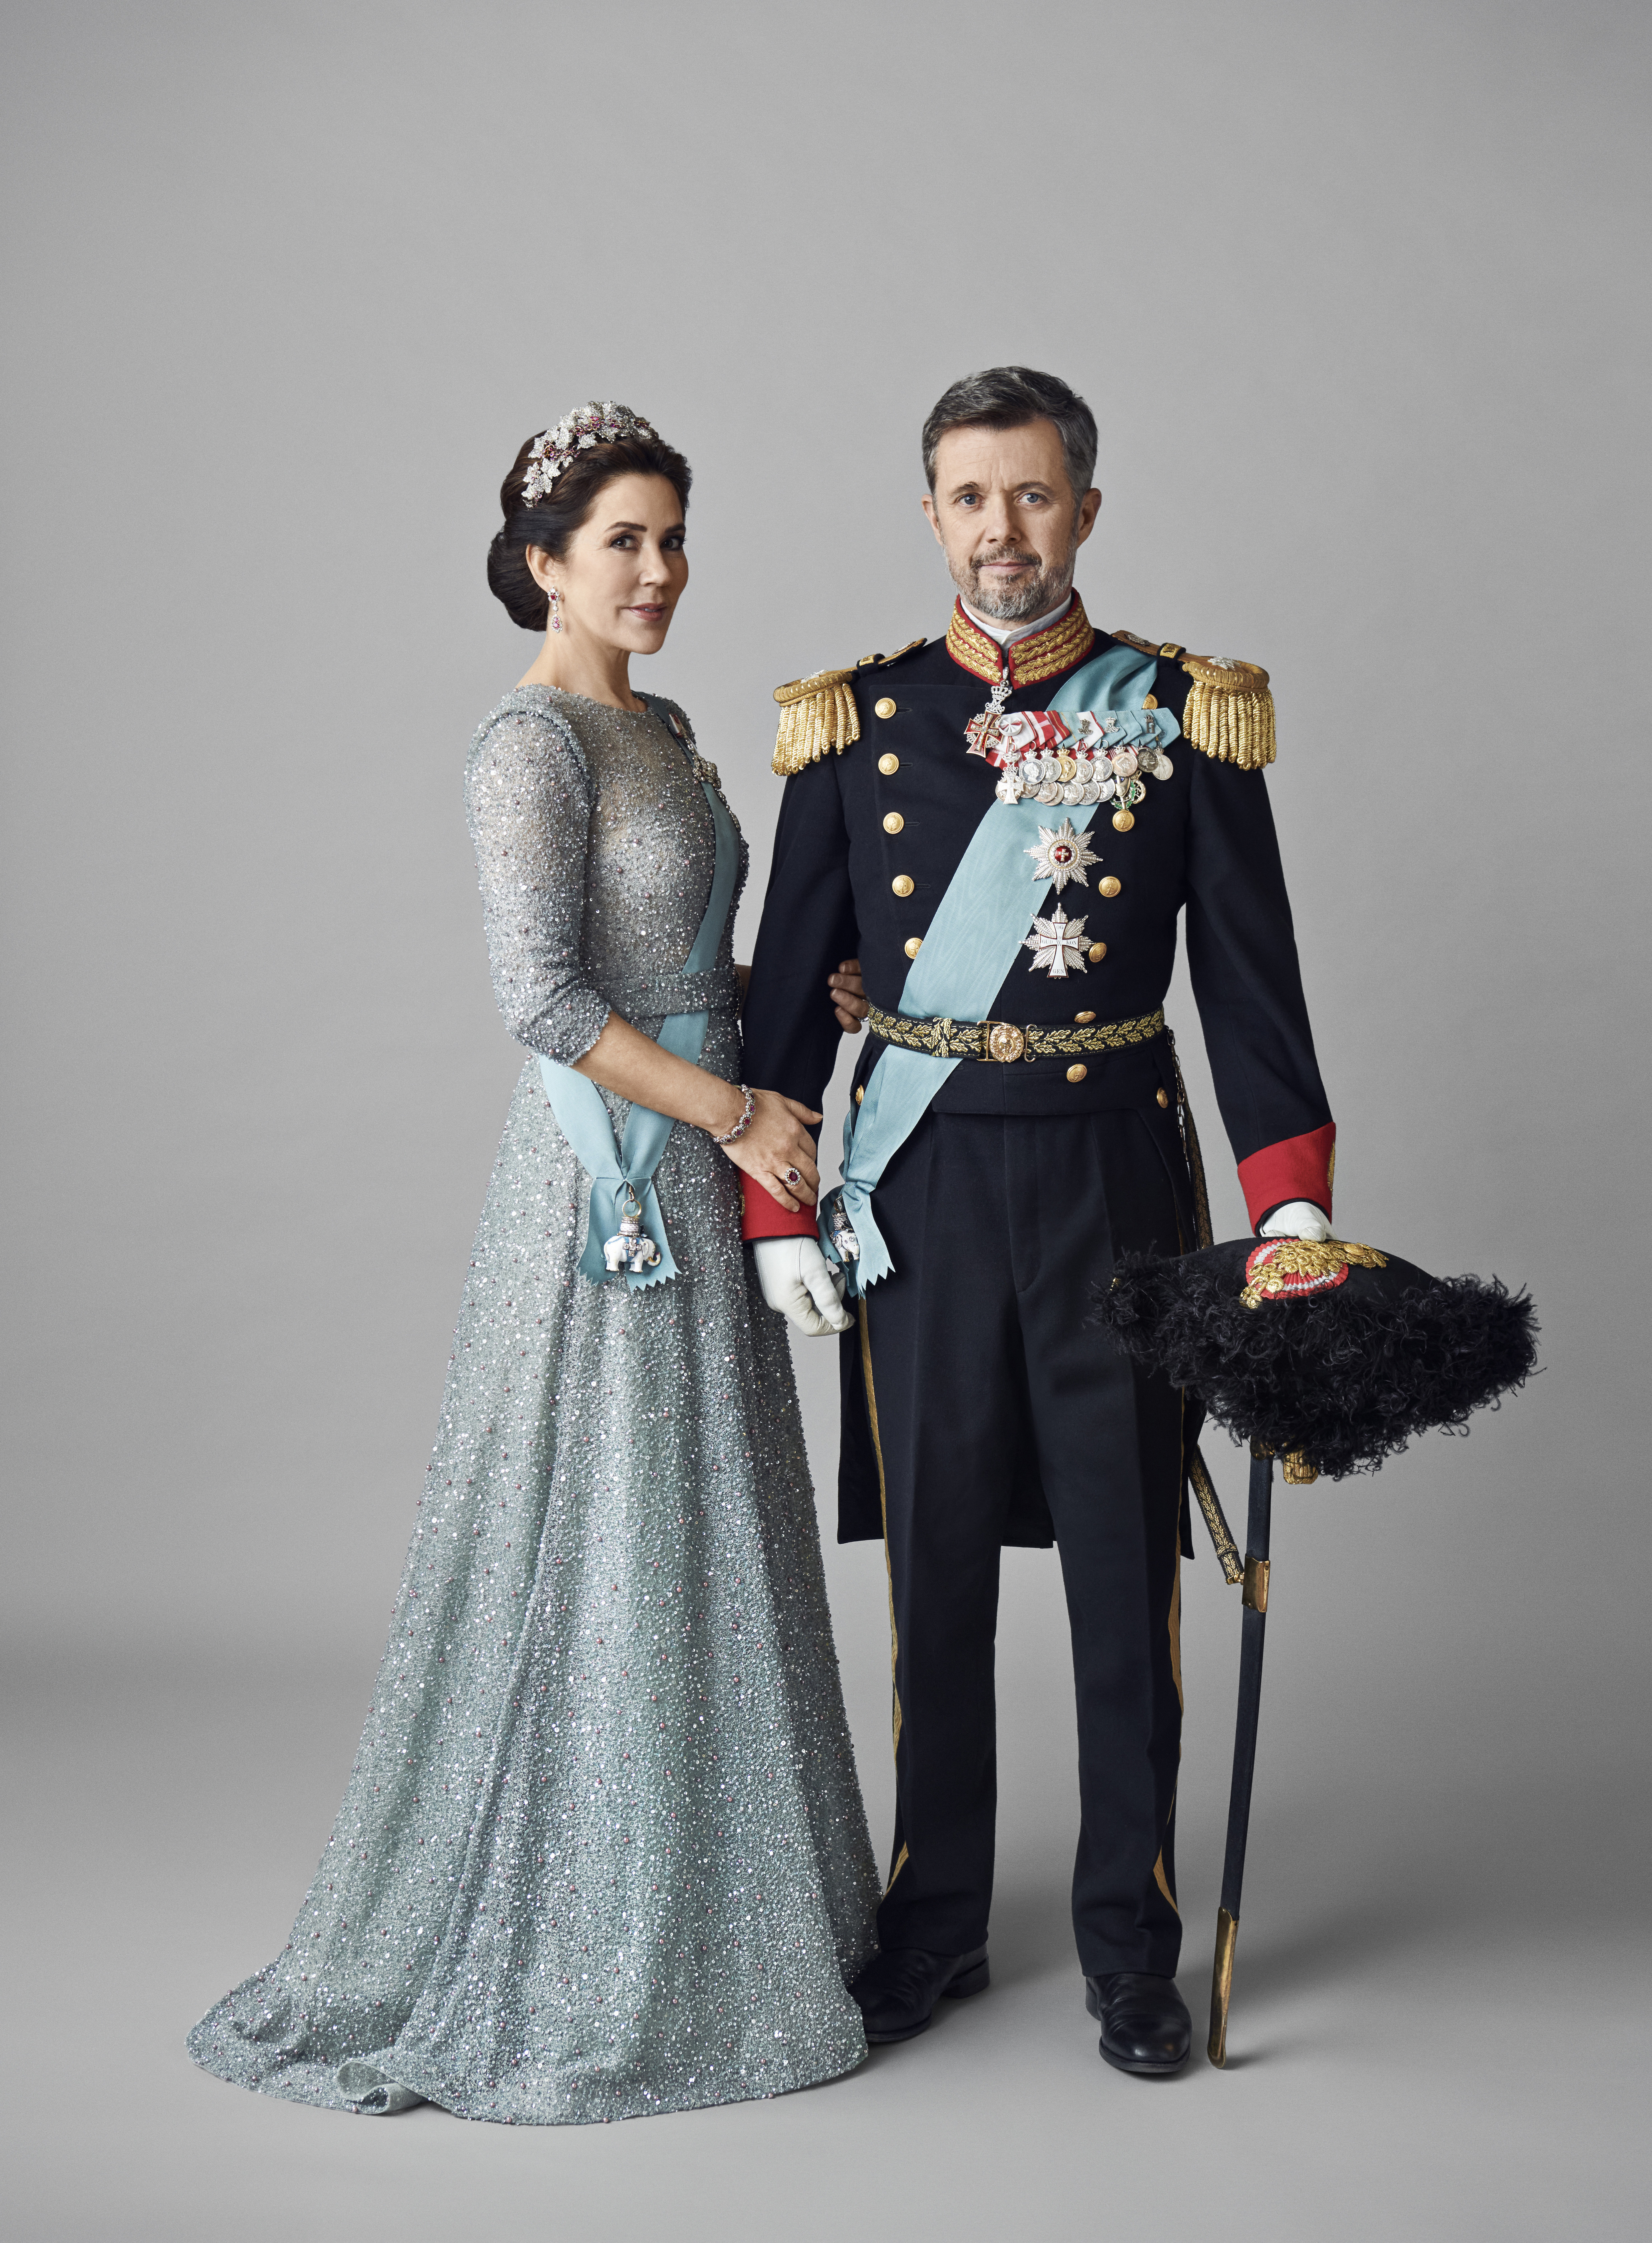 Taroona student turned Danish Queen